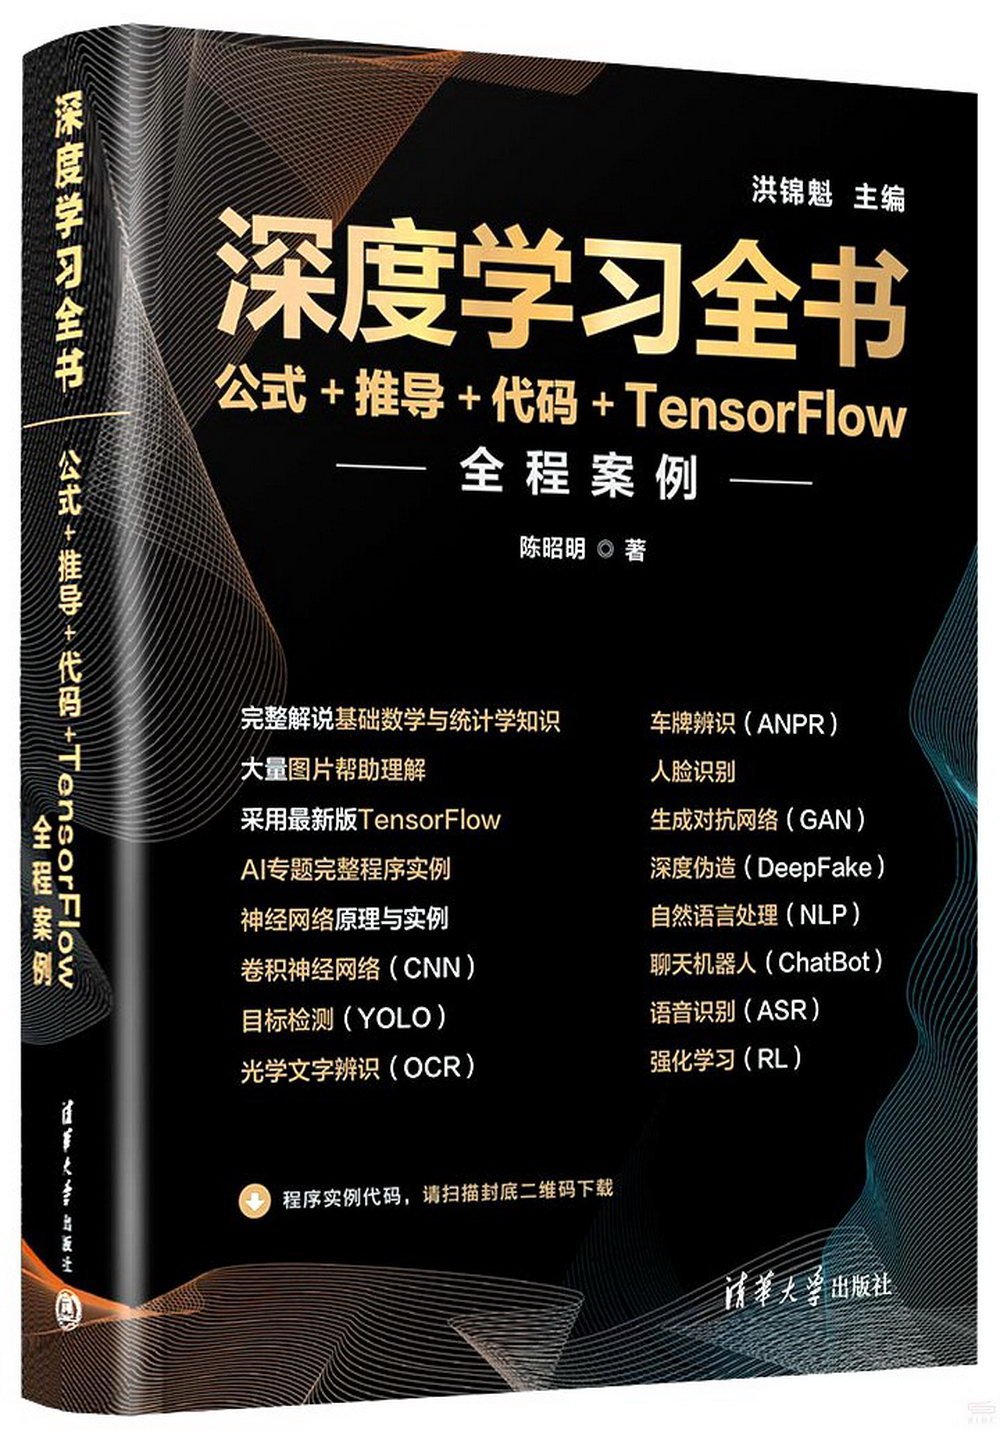 深度學習全書：公式+推導+代碼+TensorFlow全程案例